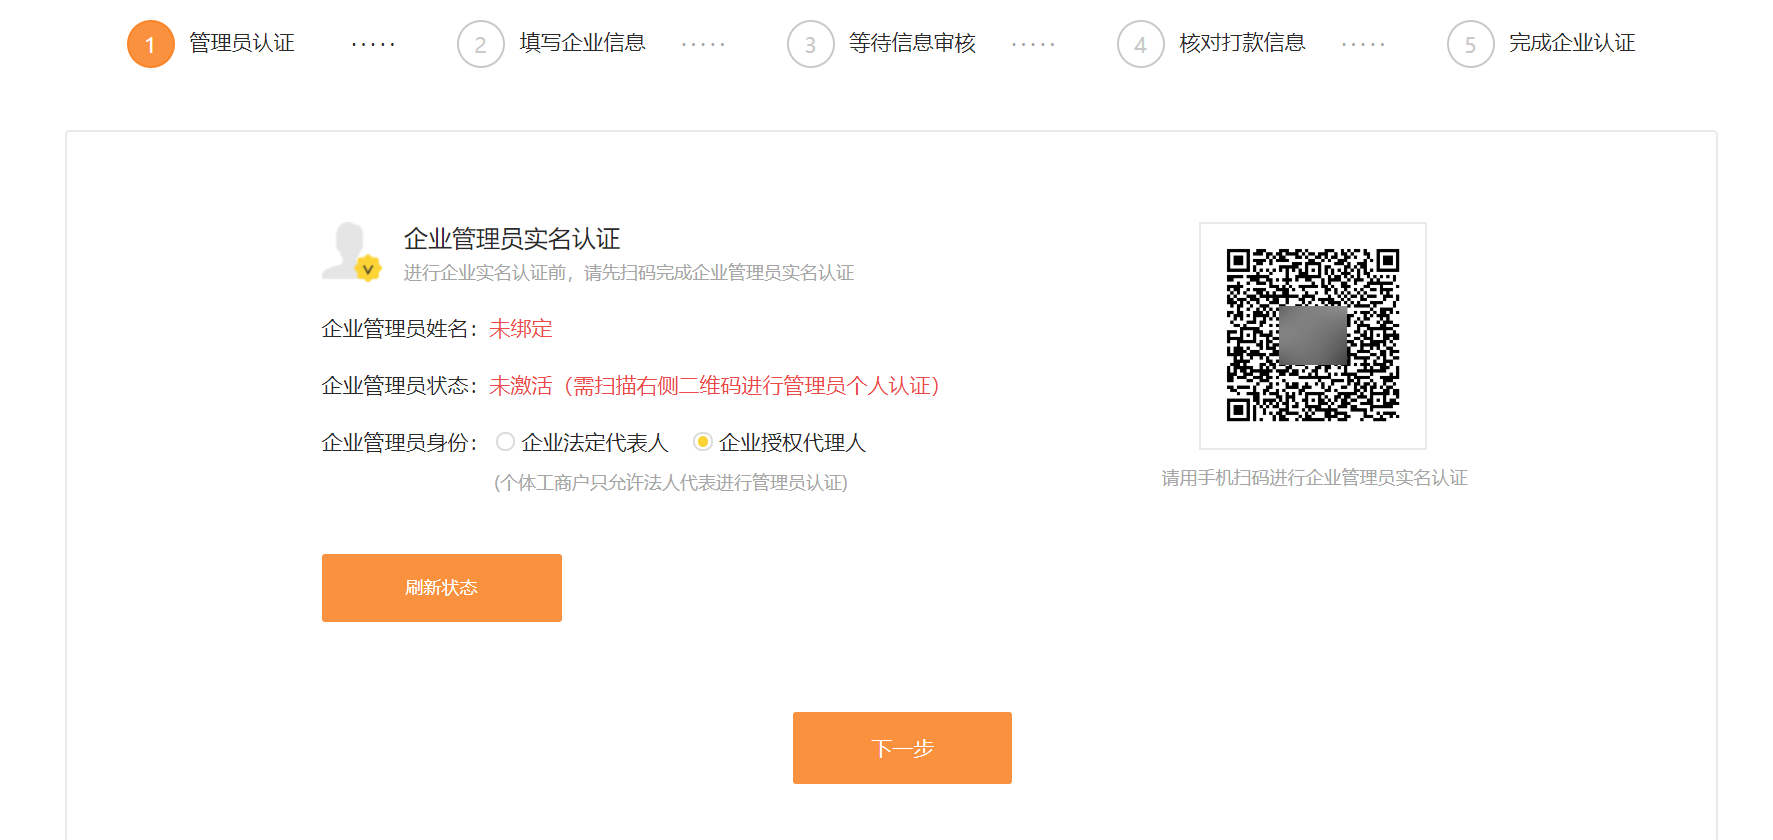 小米开发平台 企业开发者账号注册操作指南